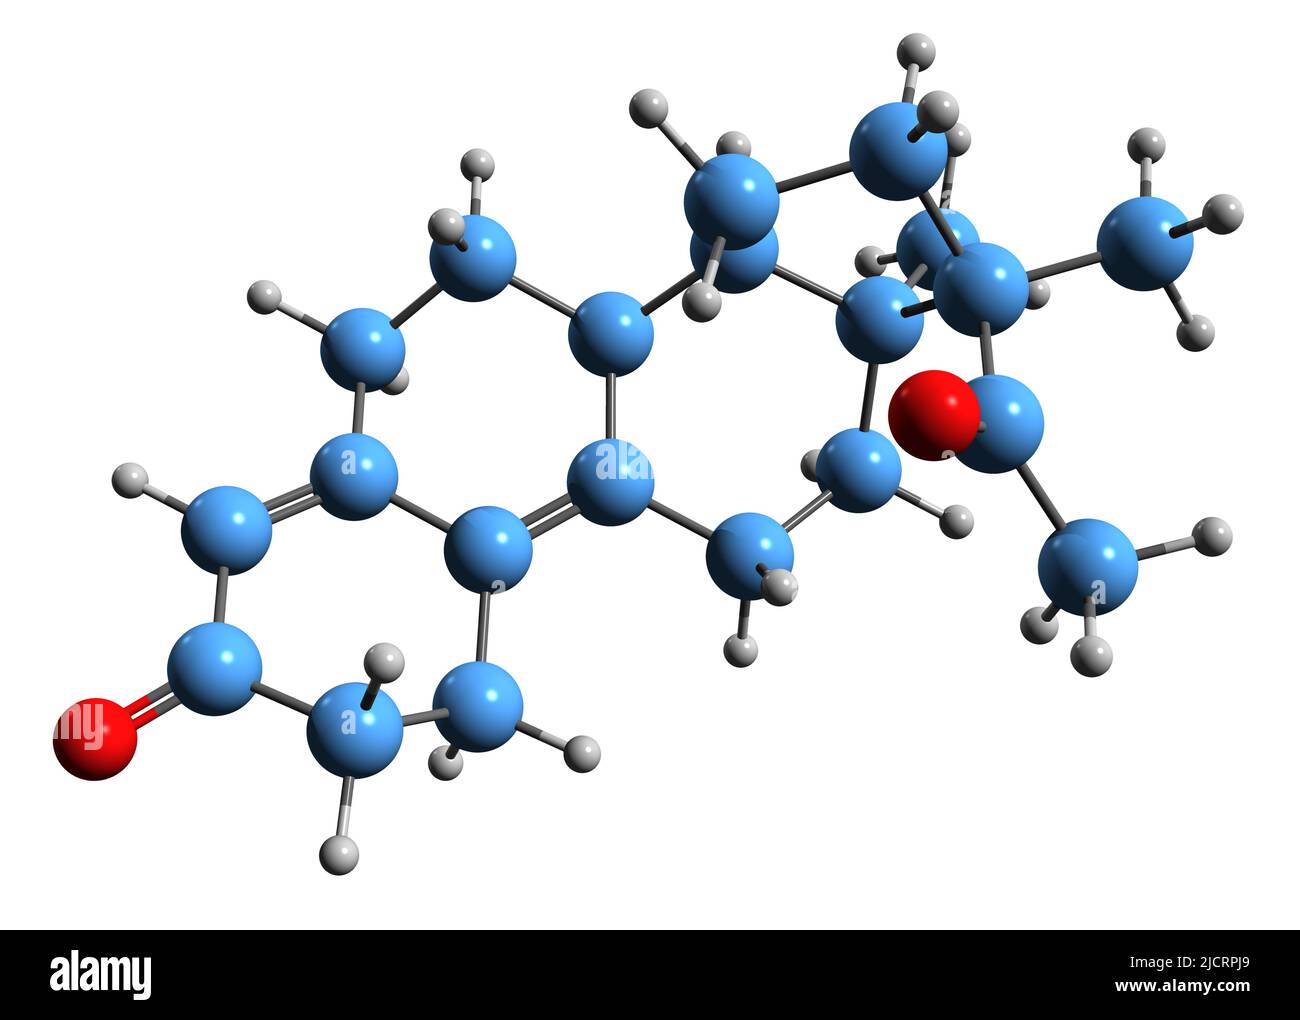 3D Imágen de la fórmula esquelética de Demegestone - estructura química molecular de la medicación de progestina aislada sobre fondo blanco Foto de stock